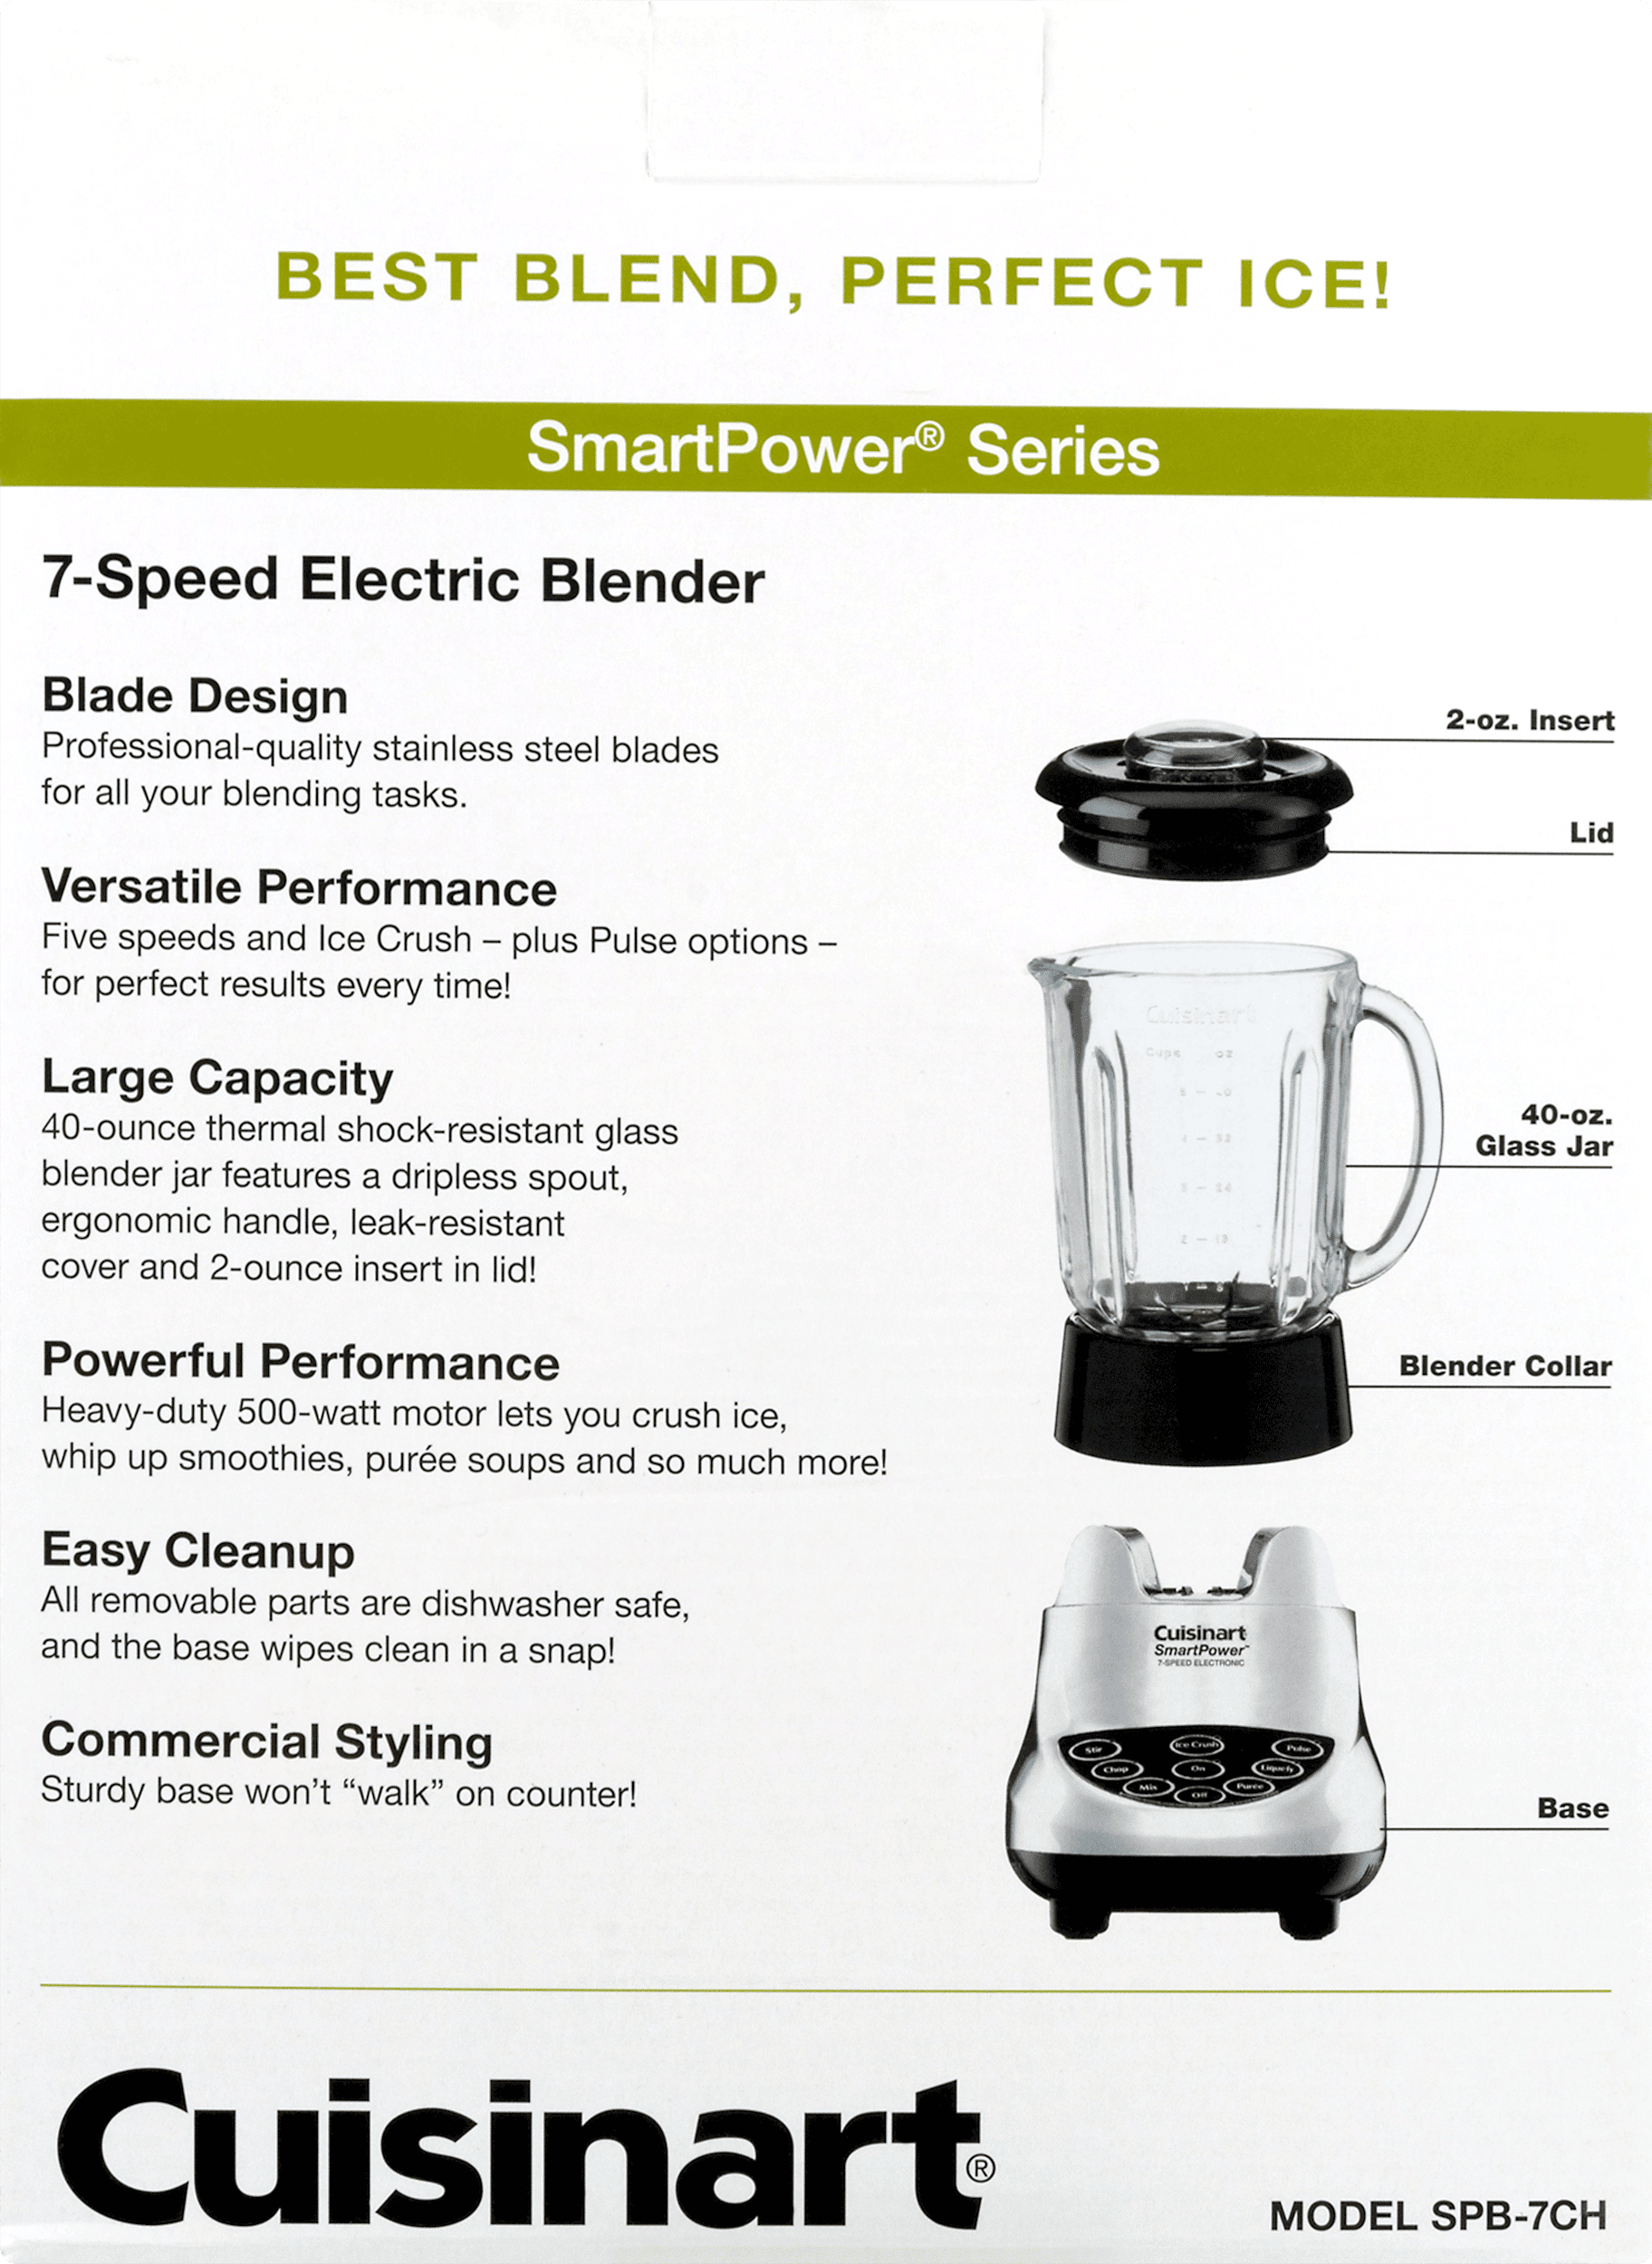 Cuisinart SmartPower 7-Speed Electronic Blender, Spb-7chp1